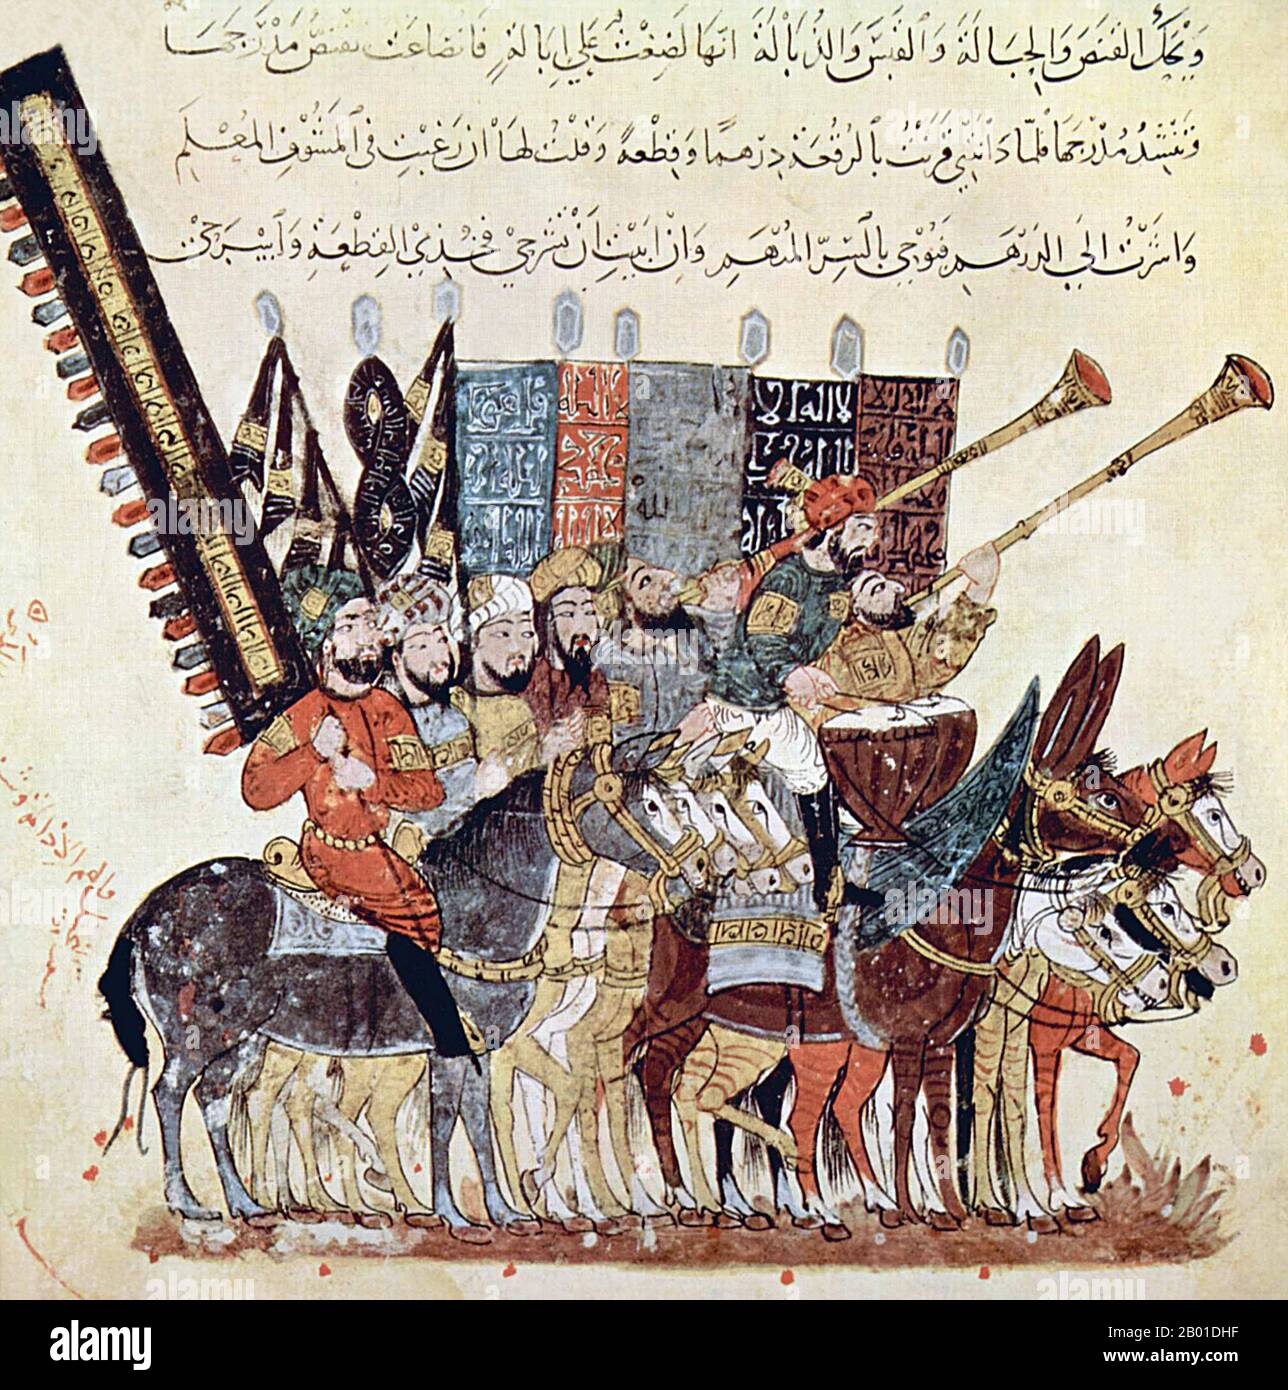 Iraq/Arabia: Annuncio della festa di 'Id al-Fitr che segna la fine del mese Santo del Ramadan. Miniatura di Yahya ibn Mahmud al-Wasiti (13th ° secolo), 1237 CE. Yahyâ ibn Mahmûd al-Wâsitî è stato un artista arabo islamico del 13th° secolo. Al-Wasiti è nato a Wasit, nel sud dell'Iraq. Fu notato per le sue illustrazioni del Maqam di al-Hariri. Maqāma (letteralmente 'assemblee') sono un genere letterario arabo (originariamente) di prosa rima con intervalli di poesia in cui lo stravagamento retorico è cospicuo. Si dice che l'autore del 10th° secolo Badī' al-Zaman al-Hamadhāni abbia inventato la forma. Foto Stock